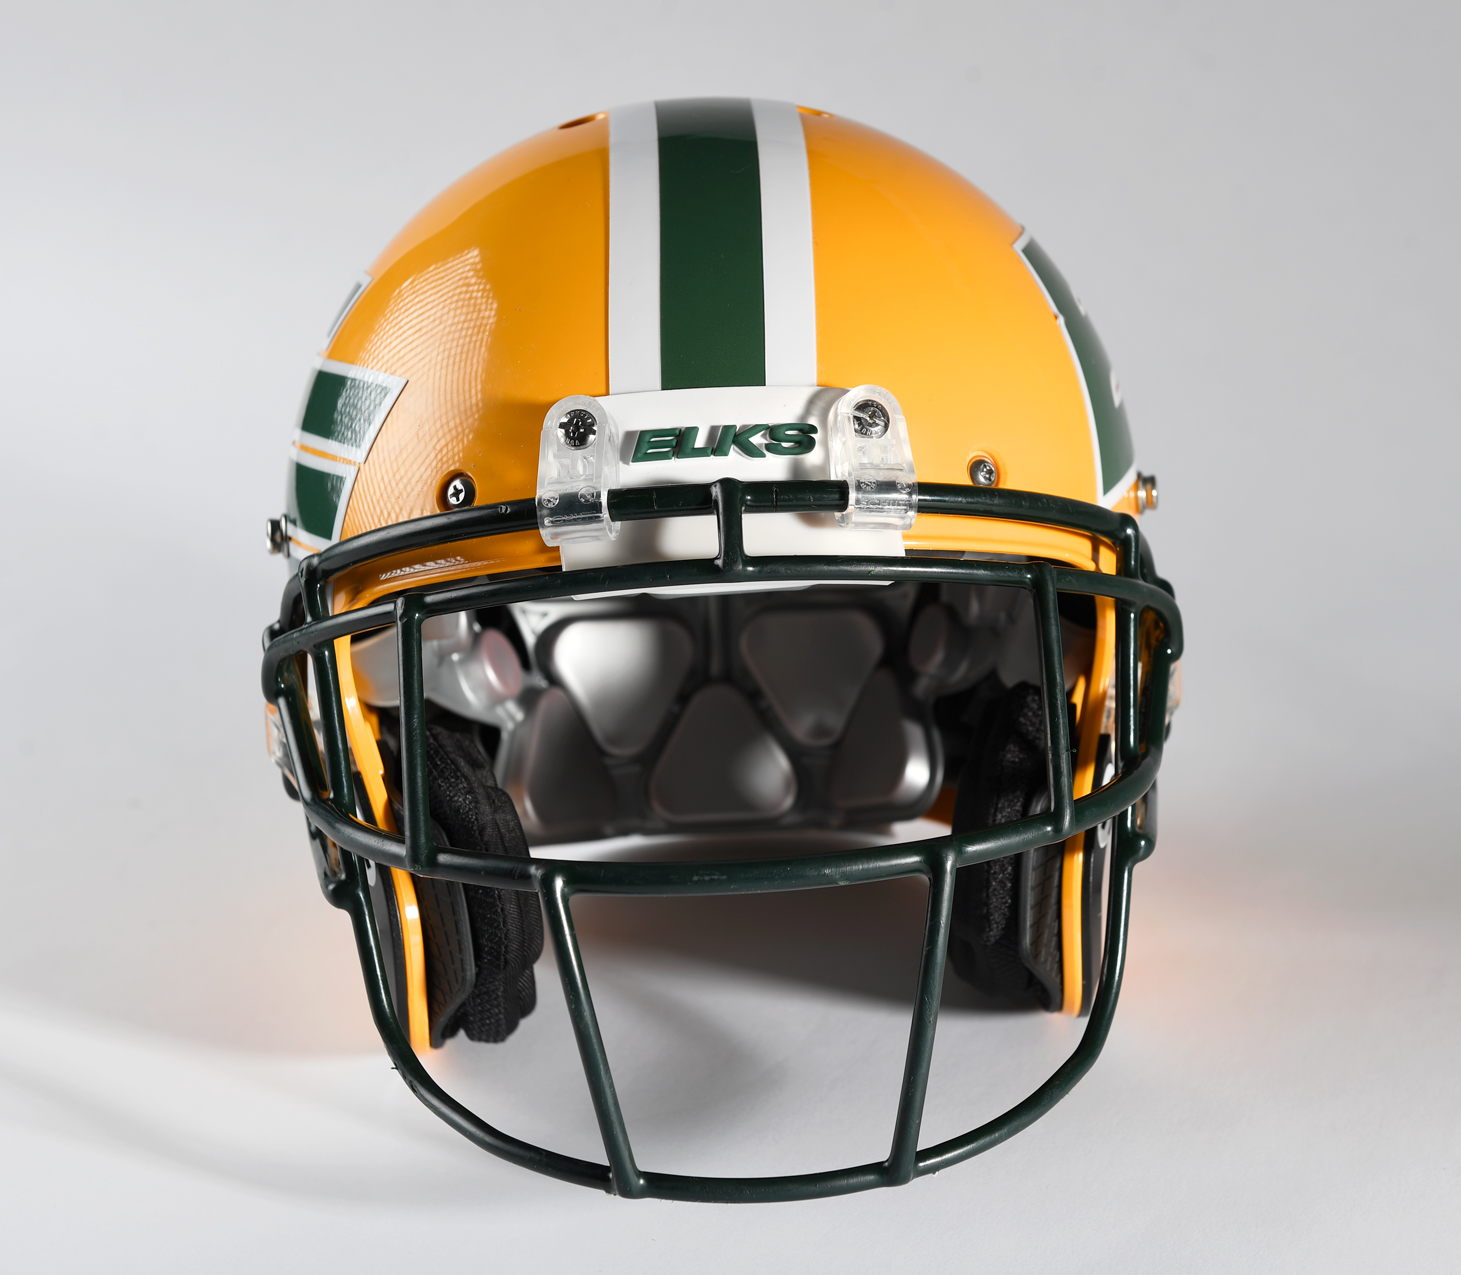 A new EE dynasty: Elks 2022 helmet unveil 